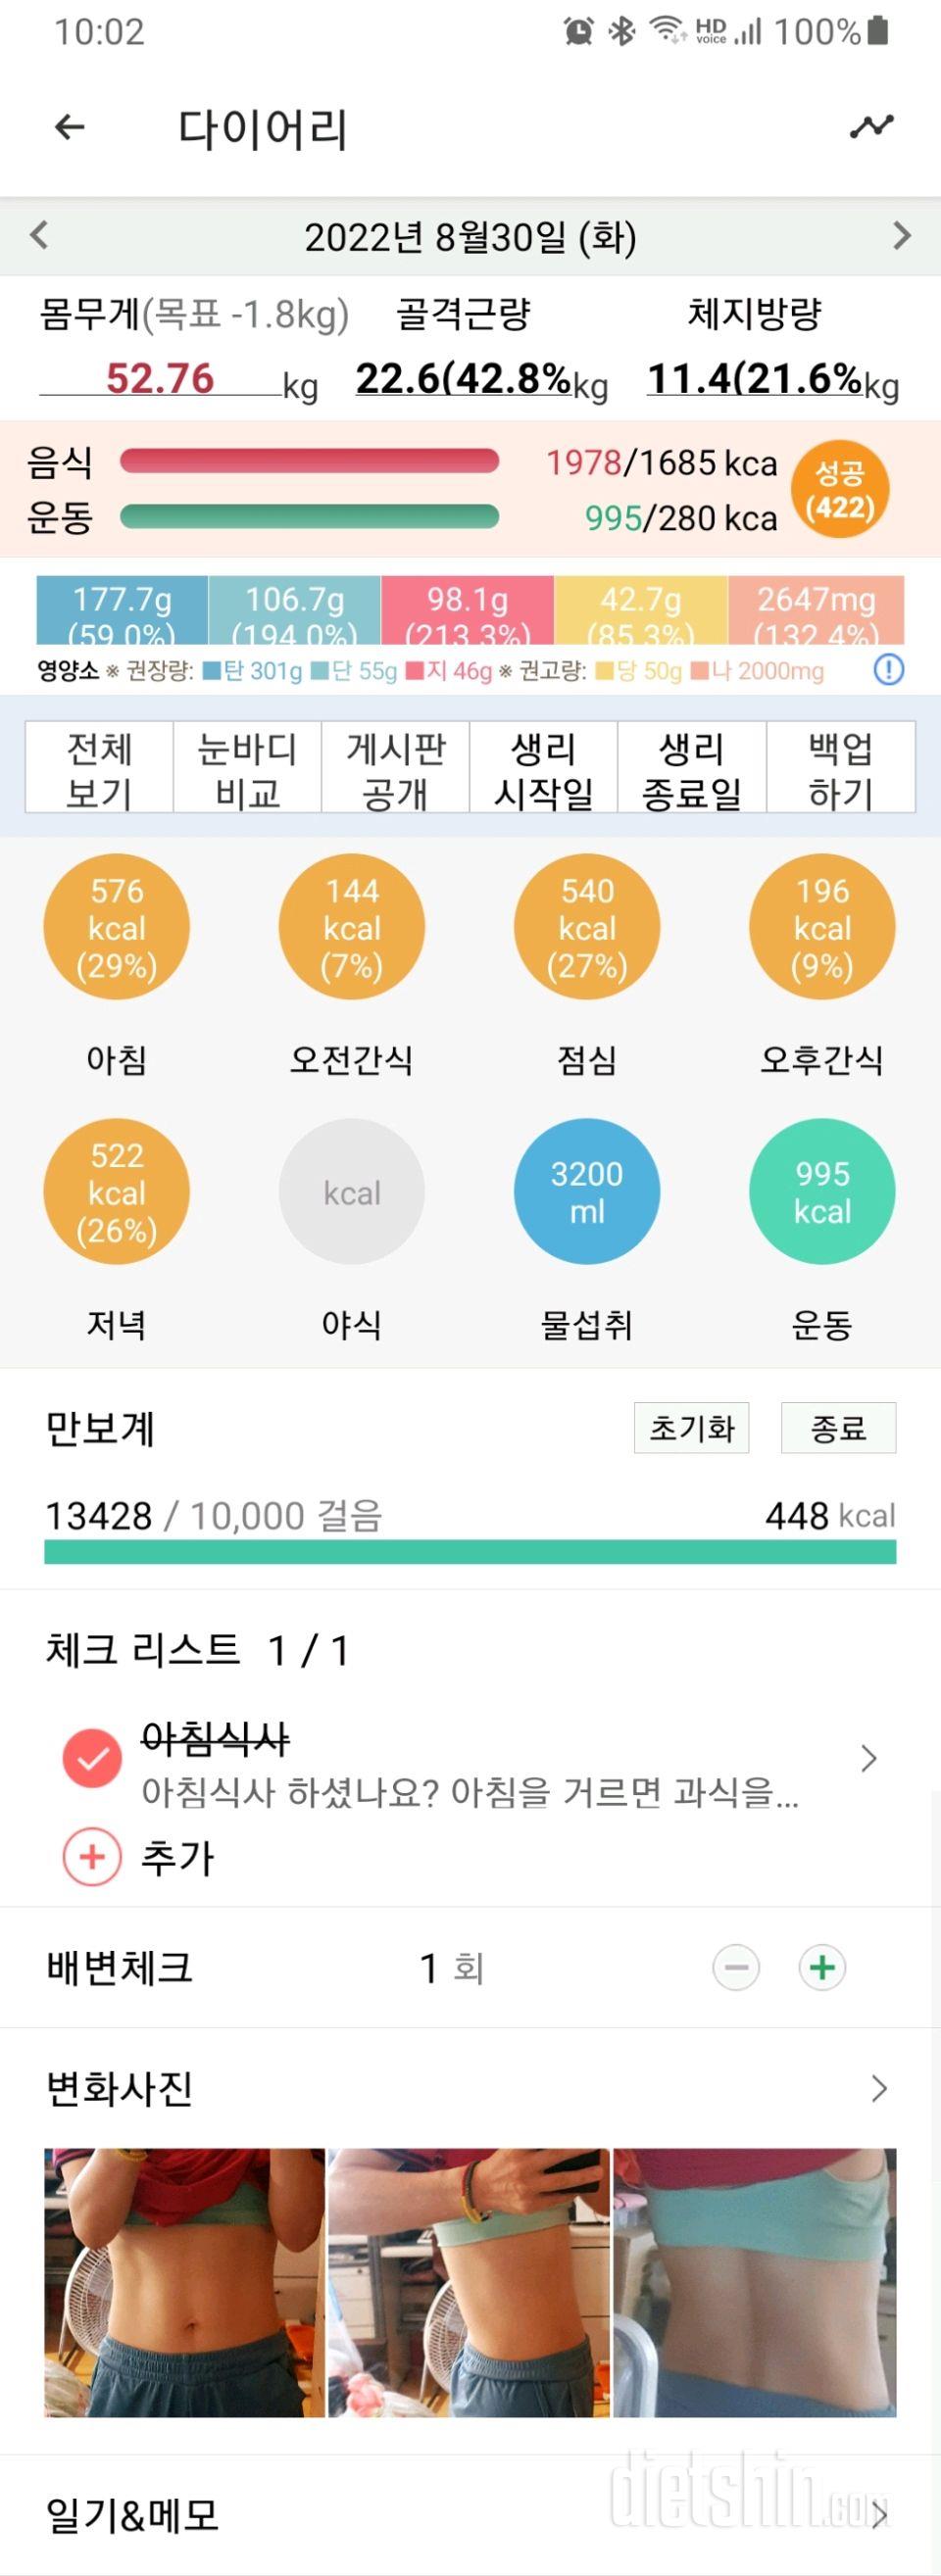 30일 야식끊기510일차 성공!